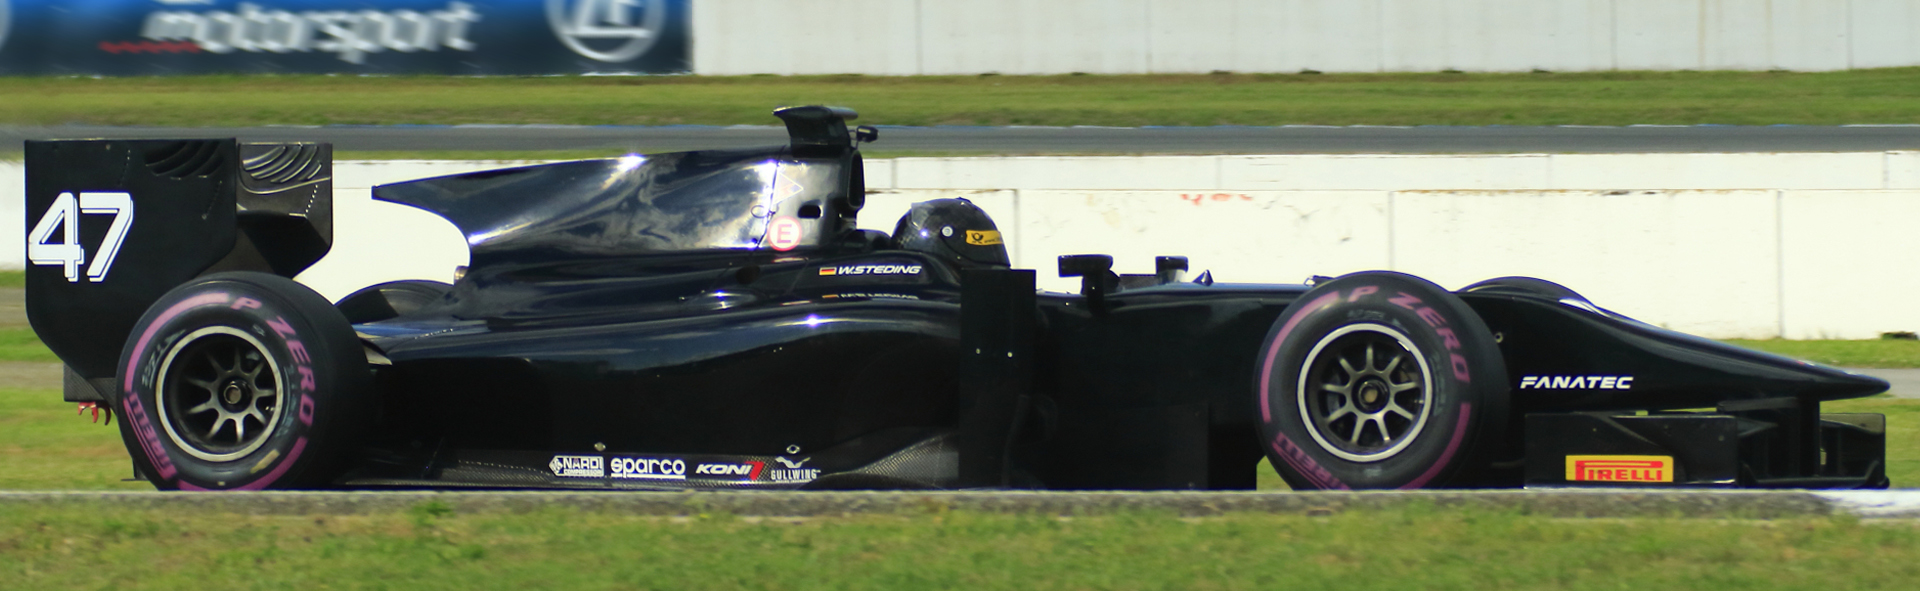 Dallara - GP2